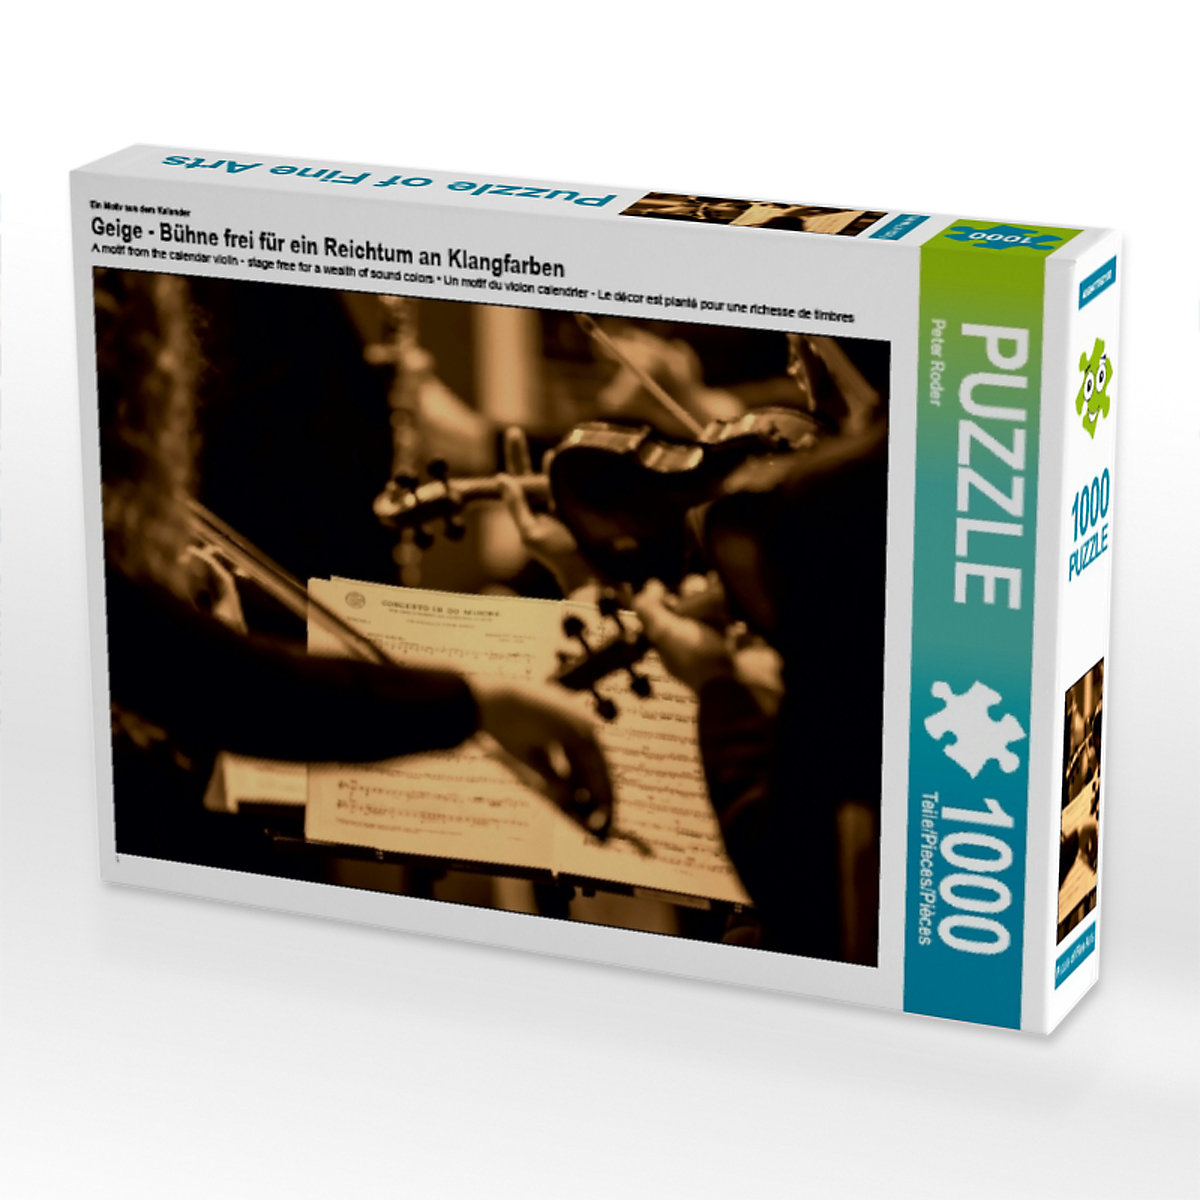 CALVENDO® Puzzle CALVENDO Puzzle Geige Bühne frei für ein Reichtum an Klangfarben 1000 Teile Foto-Puzzle für glückliche Stunden